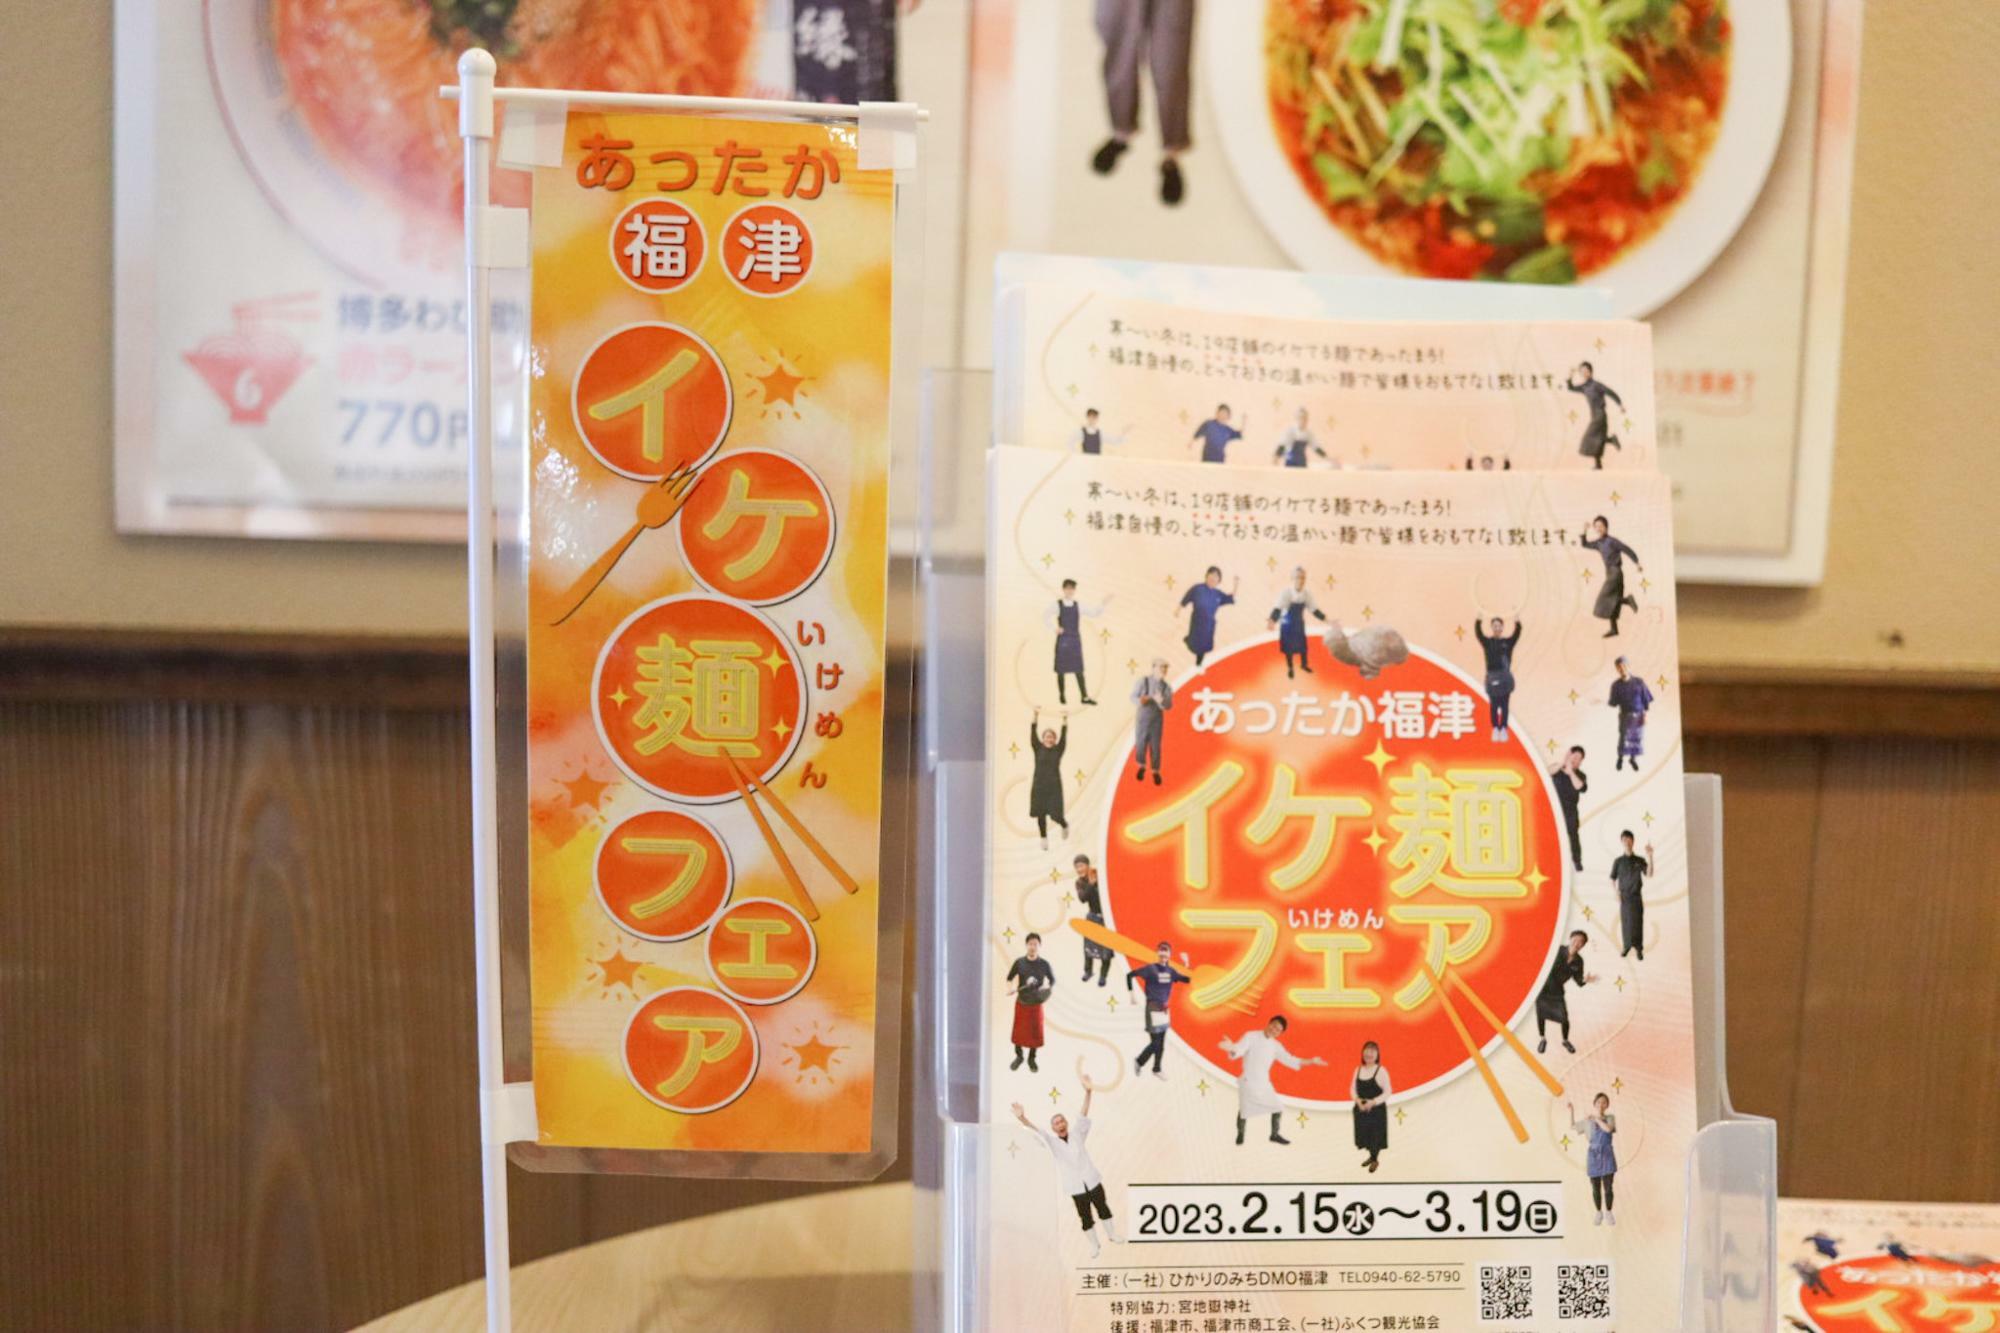 「イケ麺フェア」ミニのぼり旗とパンフレット